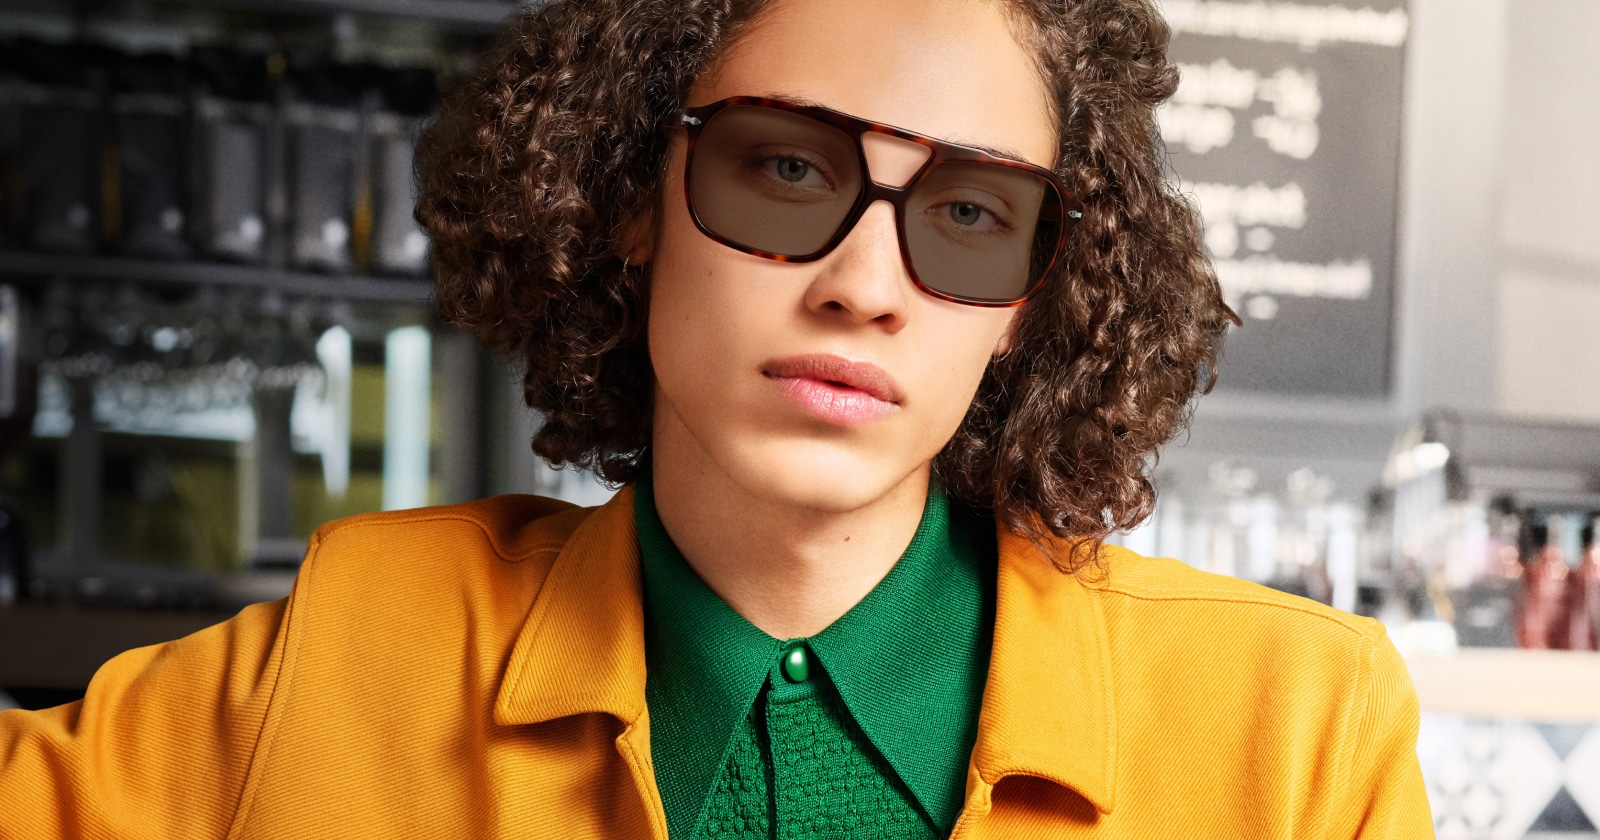 PC Lenses Male Louis Vuitton Black Fashion Sunglasses